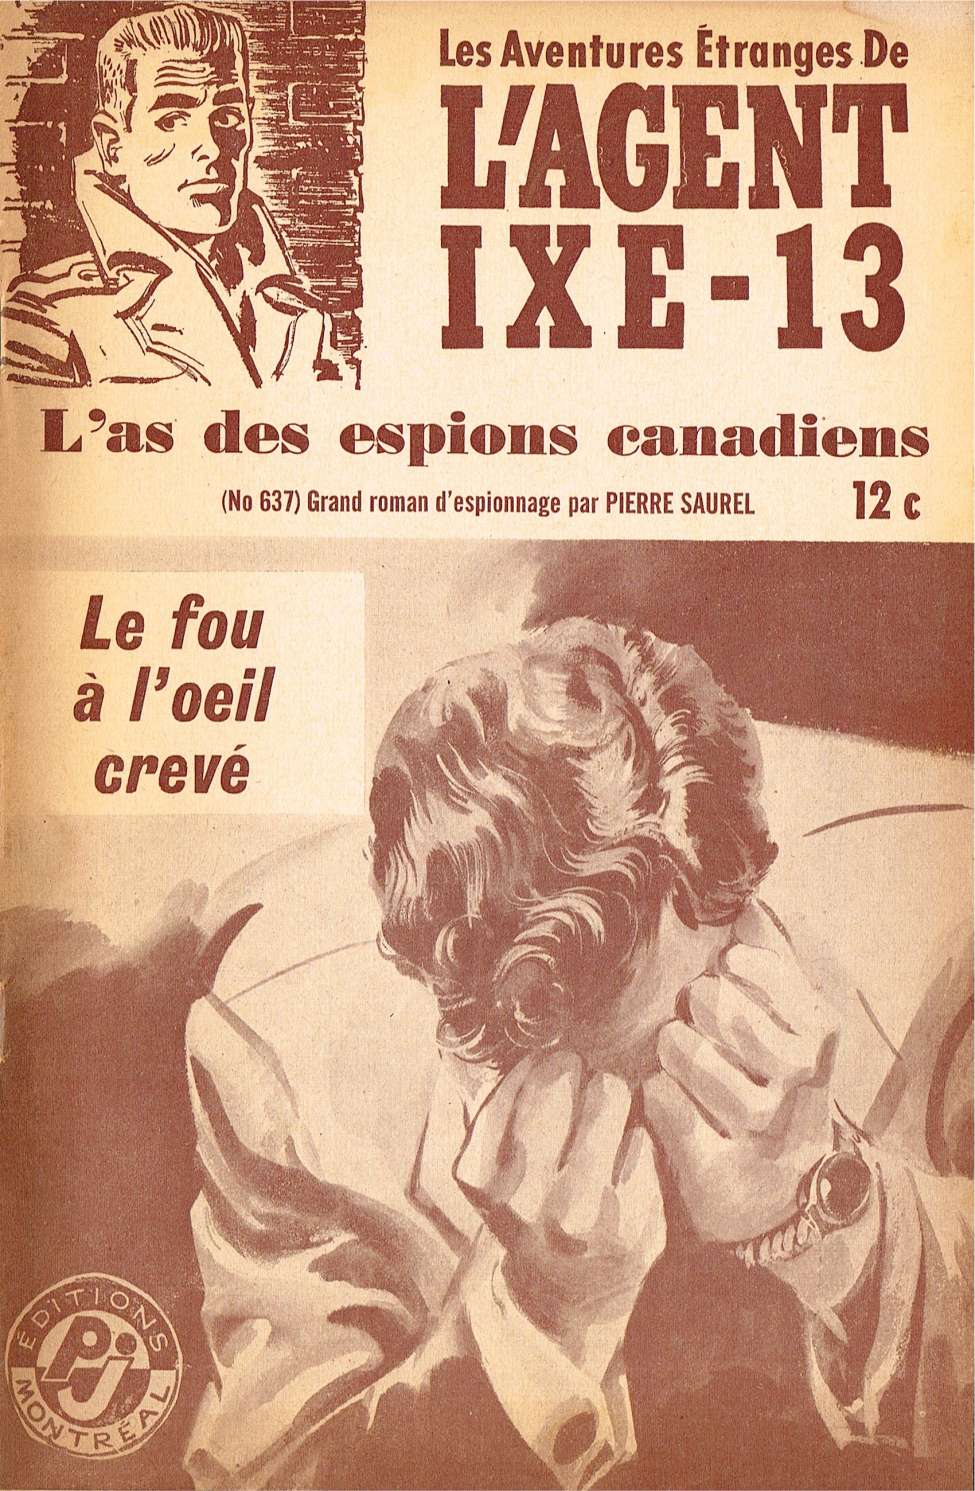 Book Cover For L'Agent IXE-13 v2 637 - Le fou à l'œil crevé